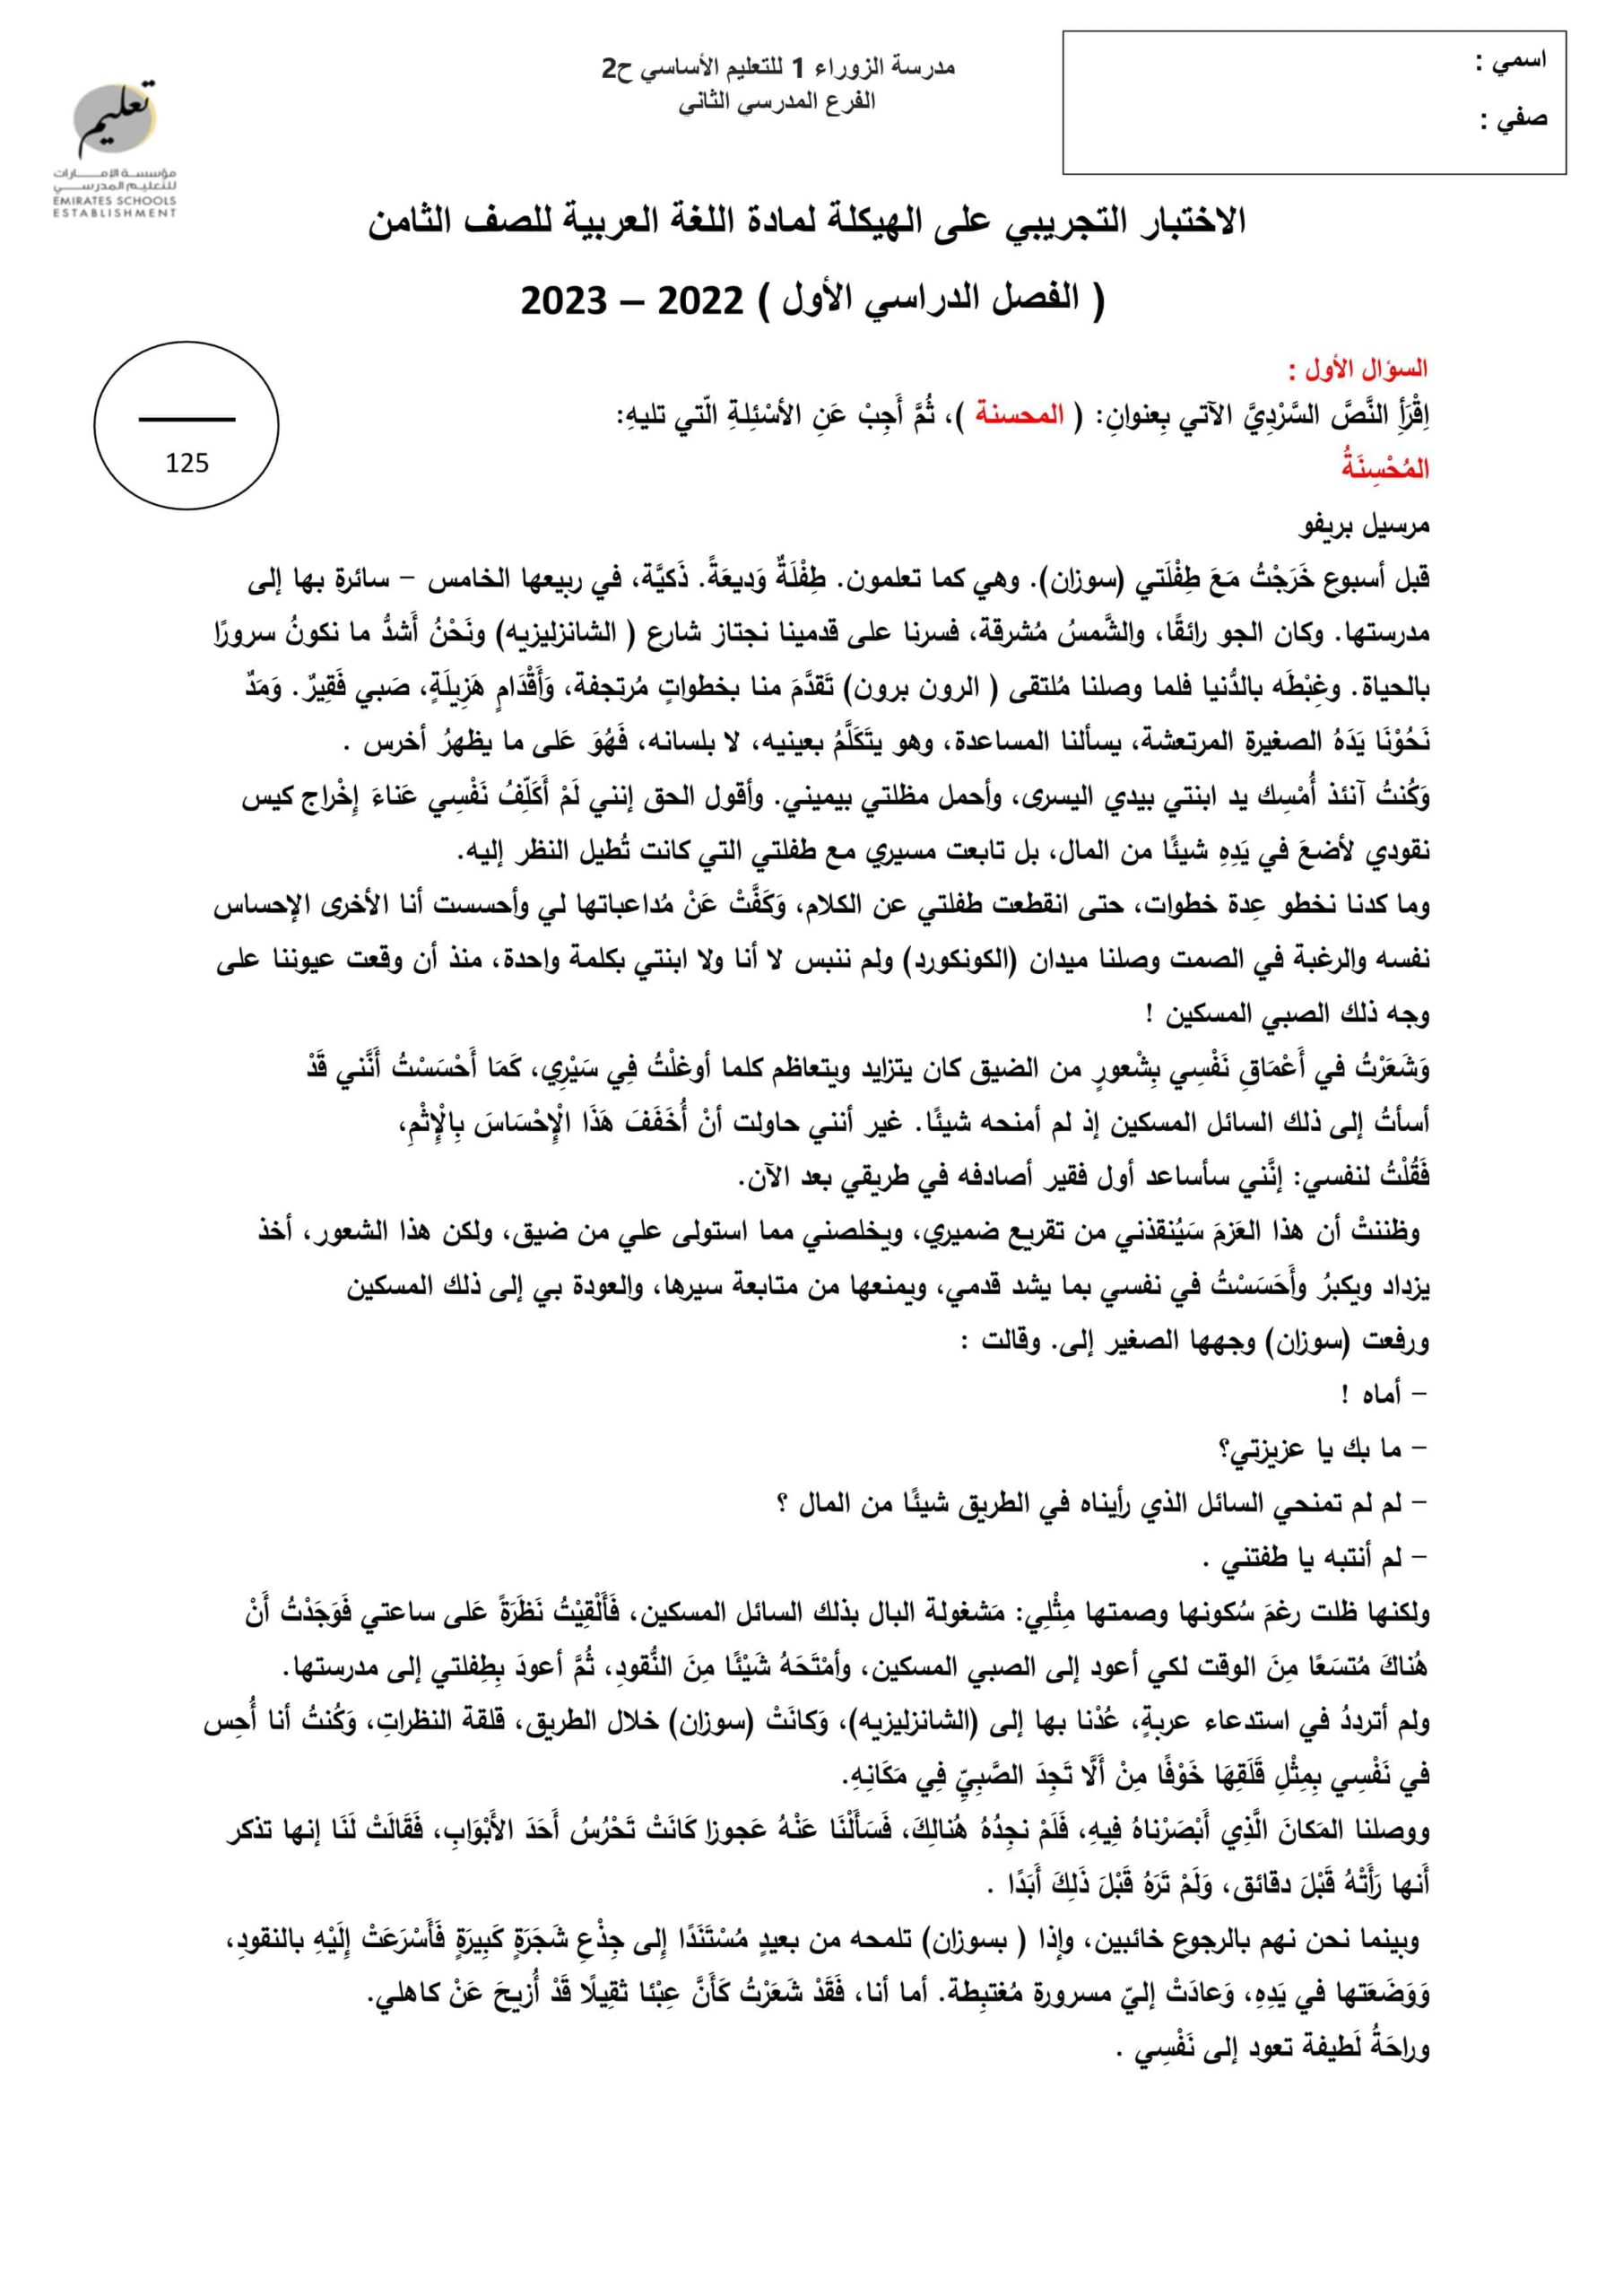 الاختبار التجريبي على الهيكلة اللغة العربية الصف الثامن 